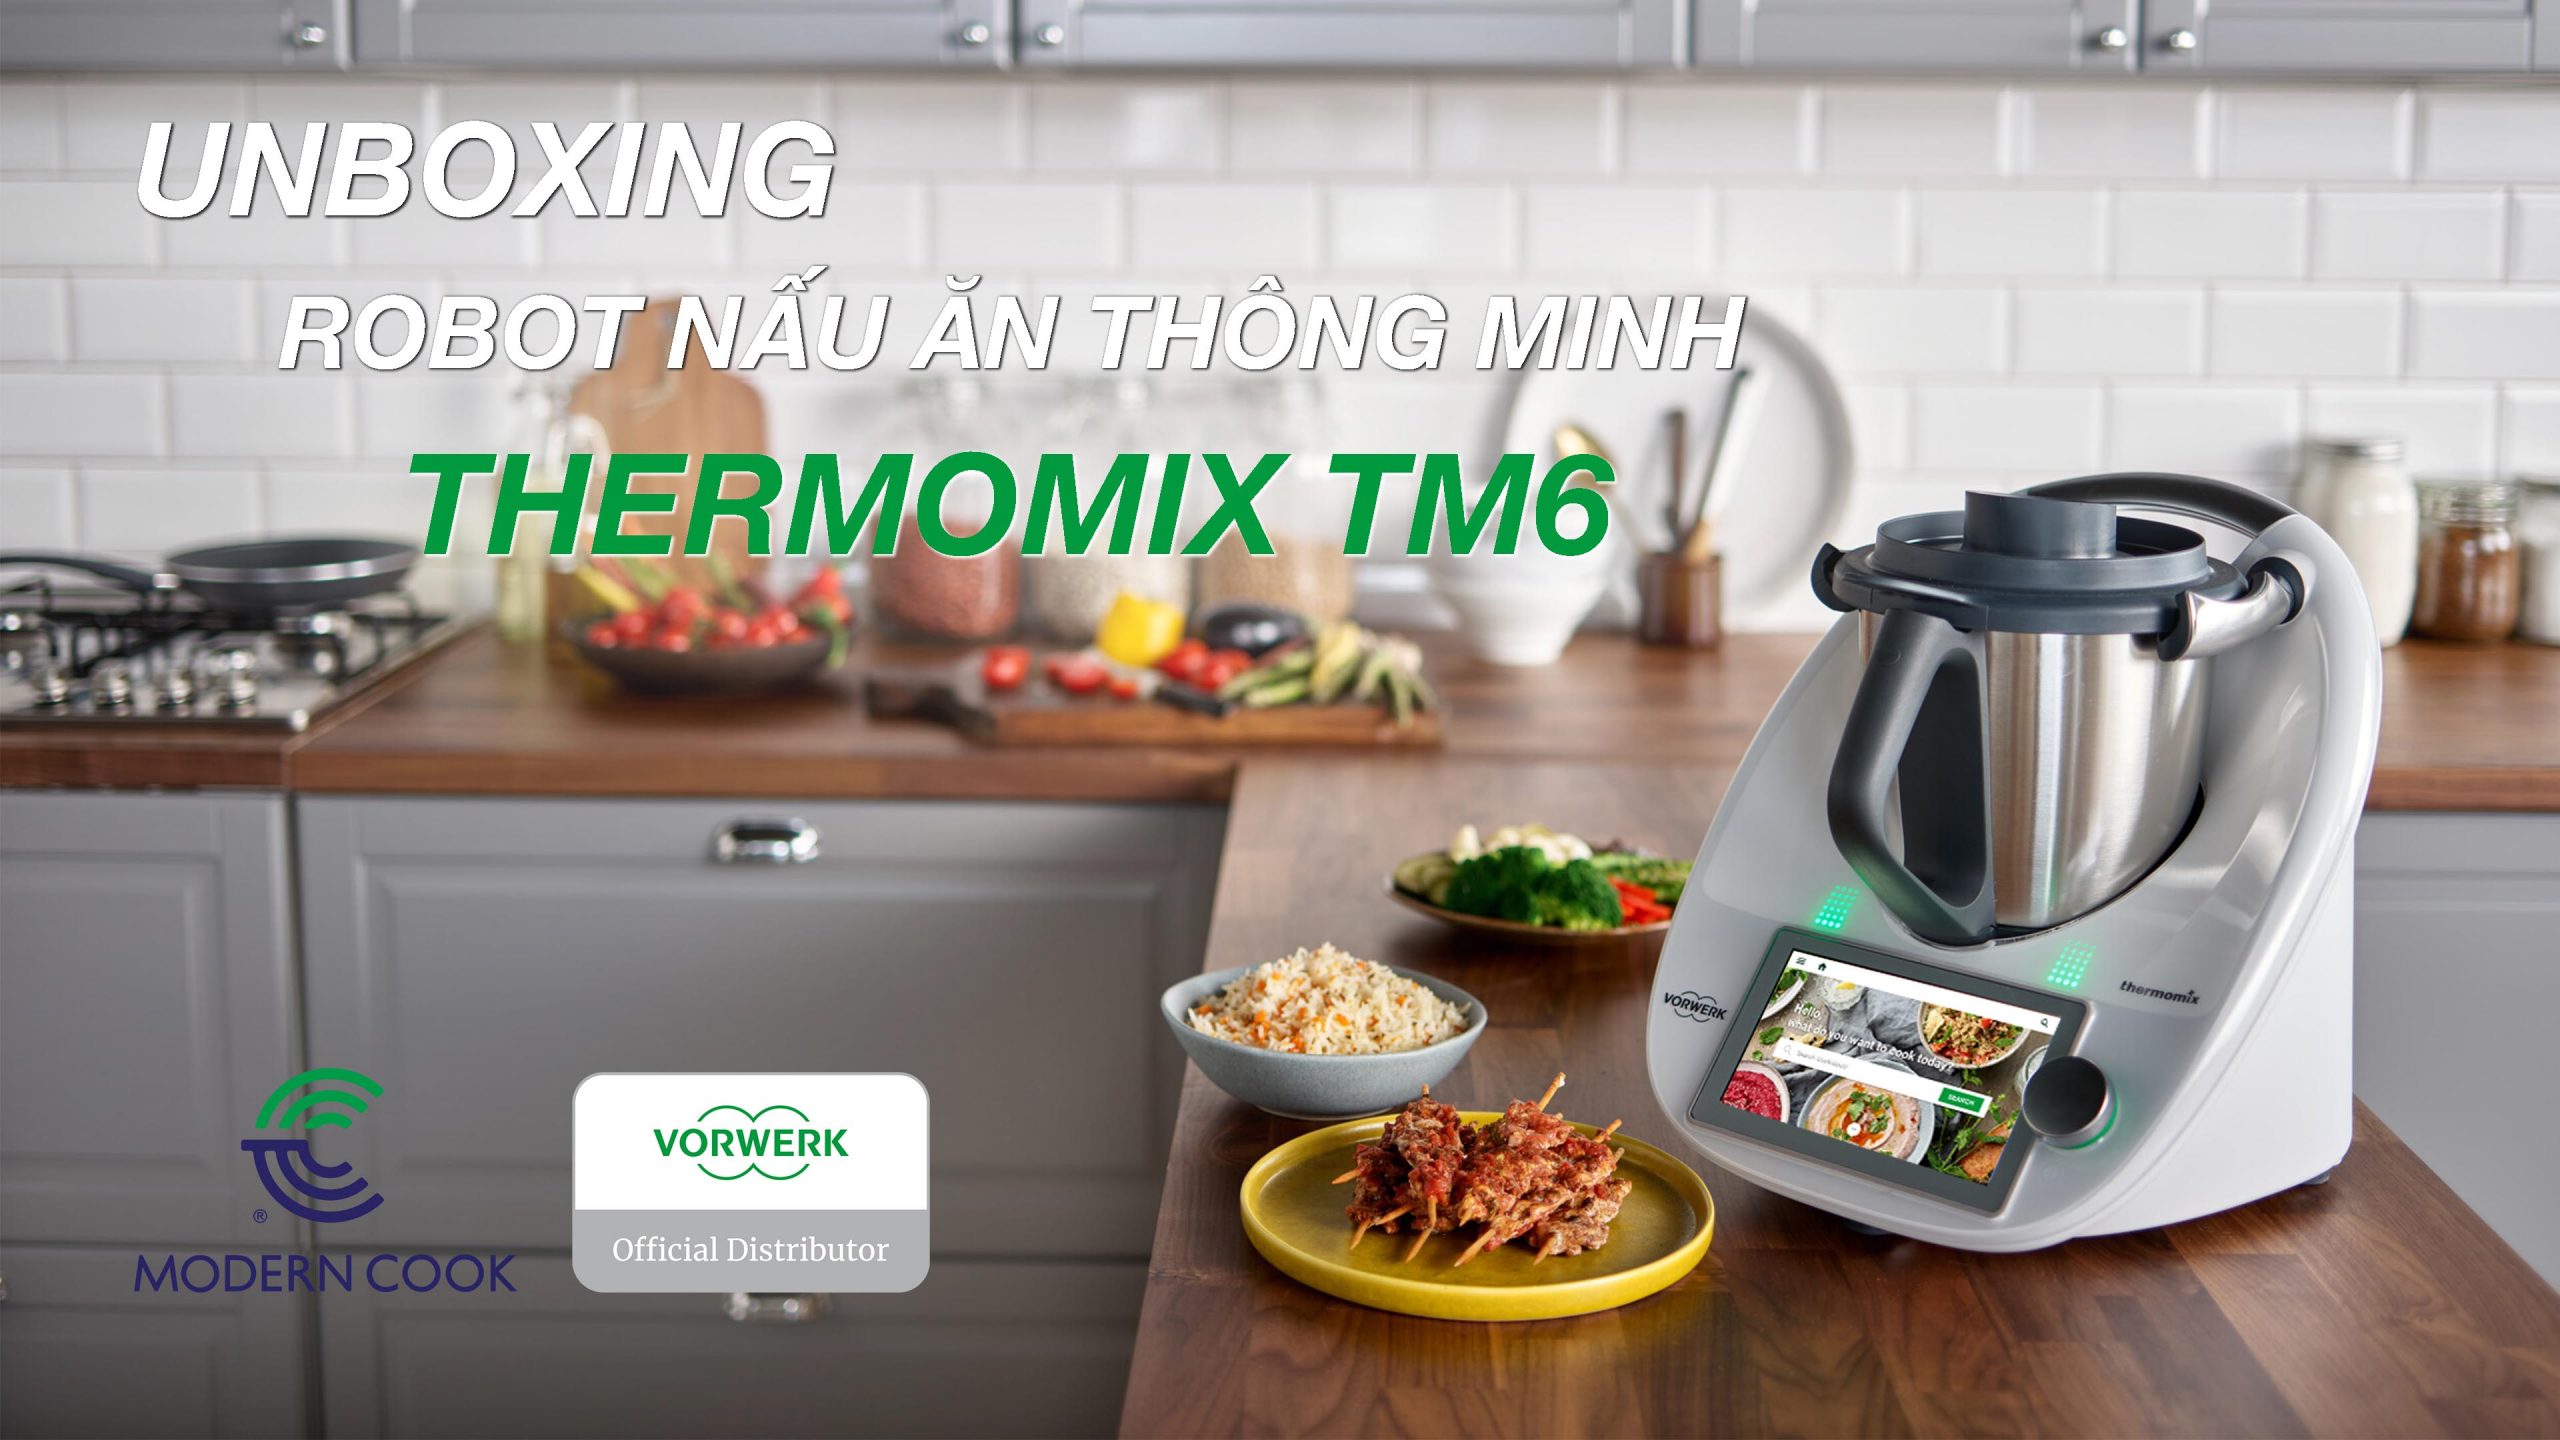 Robot nấu ăn Thermomix TM6:
Robot nấu ăn Thermomix TM6 là sản phẩm thông minh đột phá trong lĩnh vực bếp nấu. Với các chức năng và tính năng đa dạng, nó giúp bạn nấu được rất nhiều món ăn ngon và tiết kiệm thời gian. Điều đặc biệt là, nó được kết nối với ứng dụng và Internet, giúp bạn nấu được các món ăn truyền thống của một số quốc gia và tùy chỉnh theo sở thích của bạn.